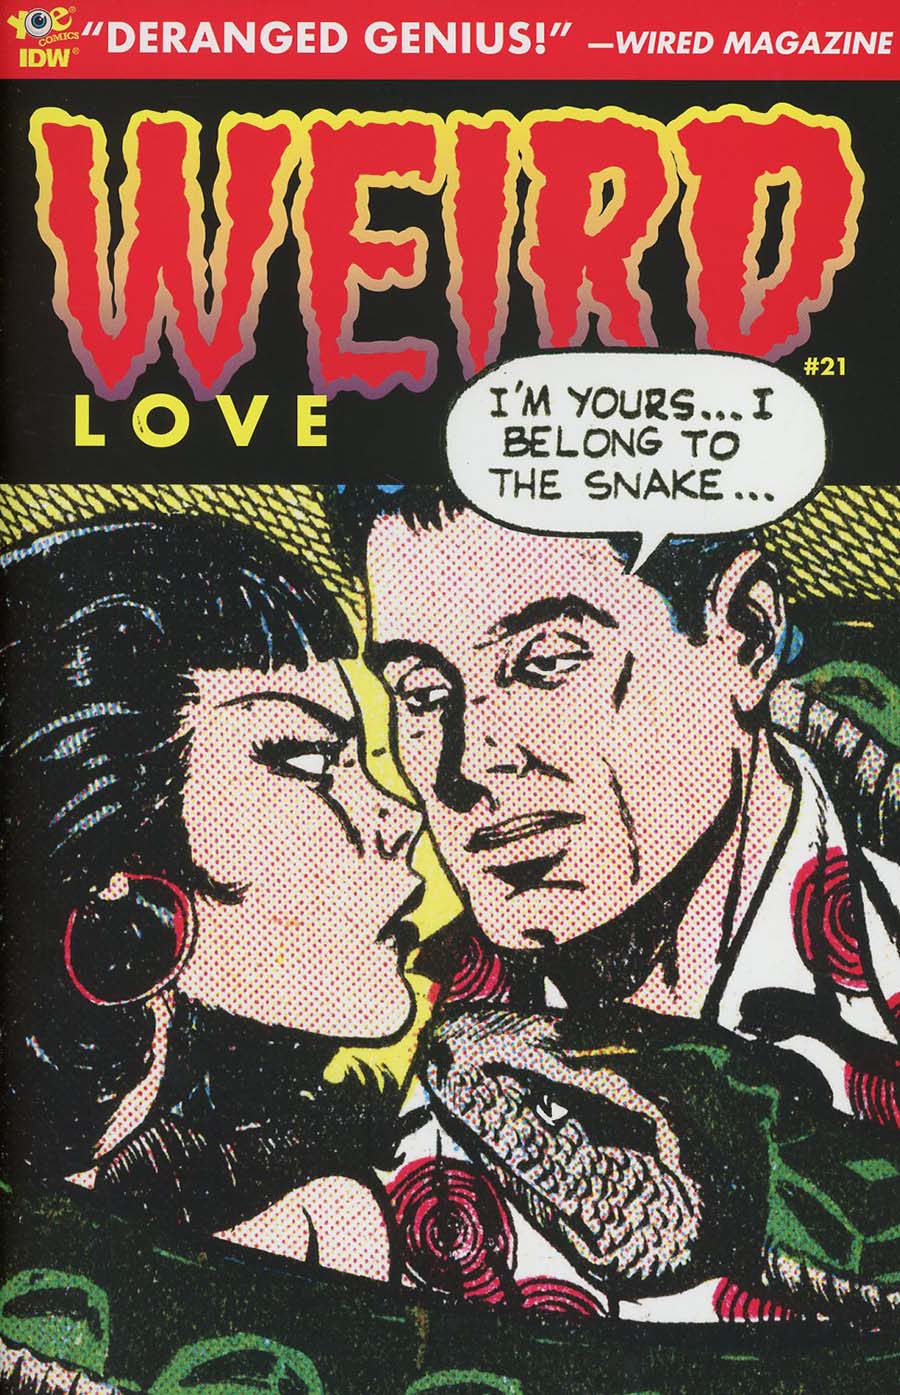 Weird Love #21